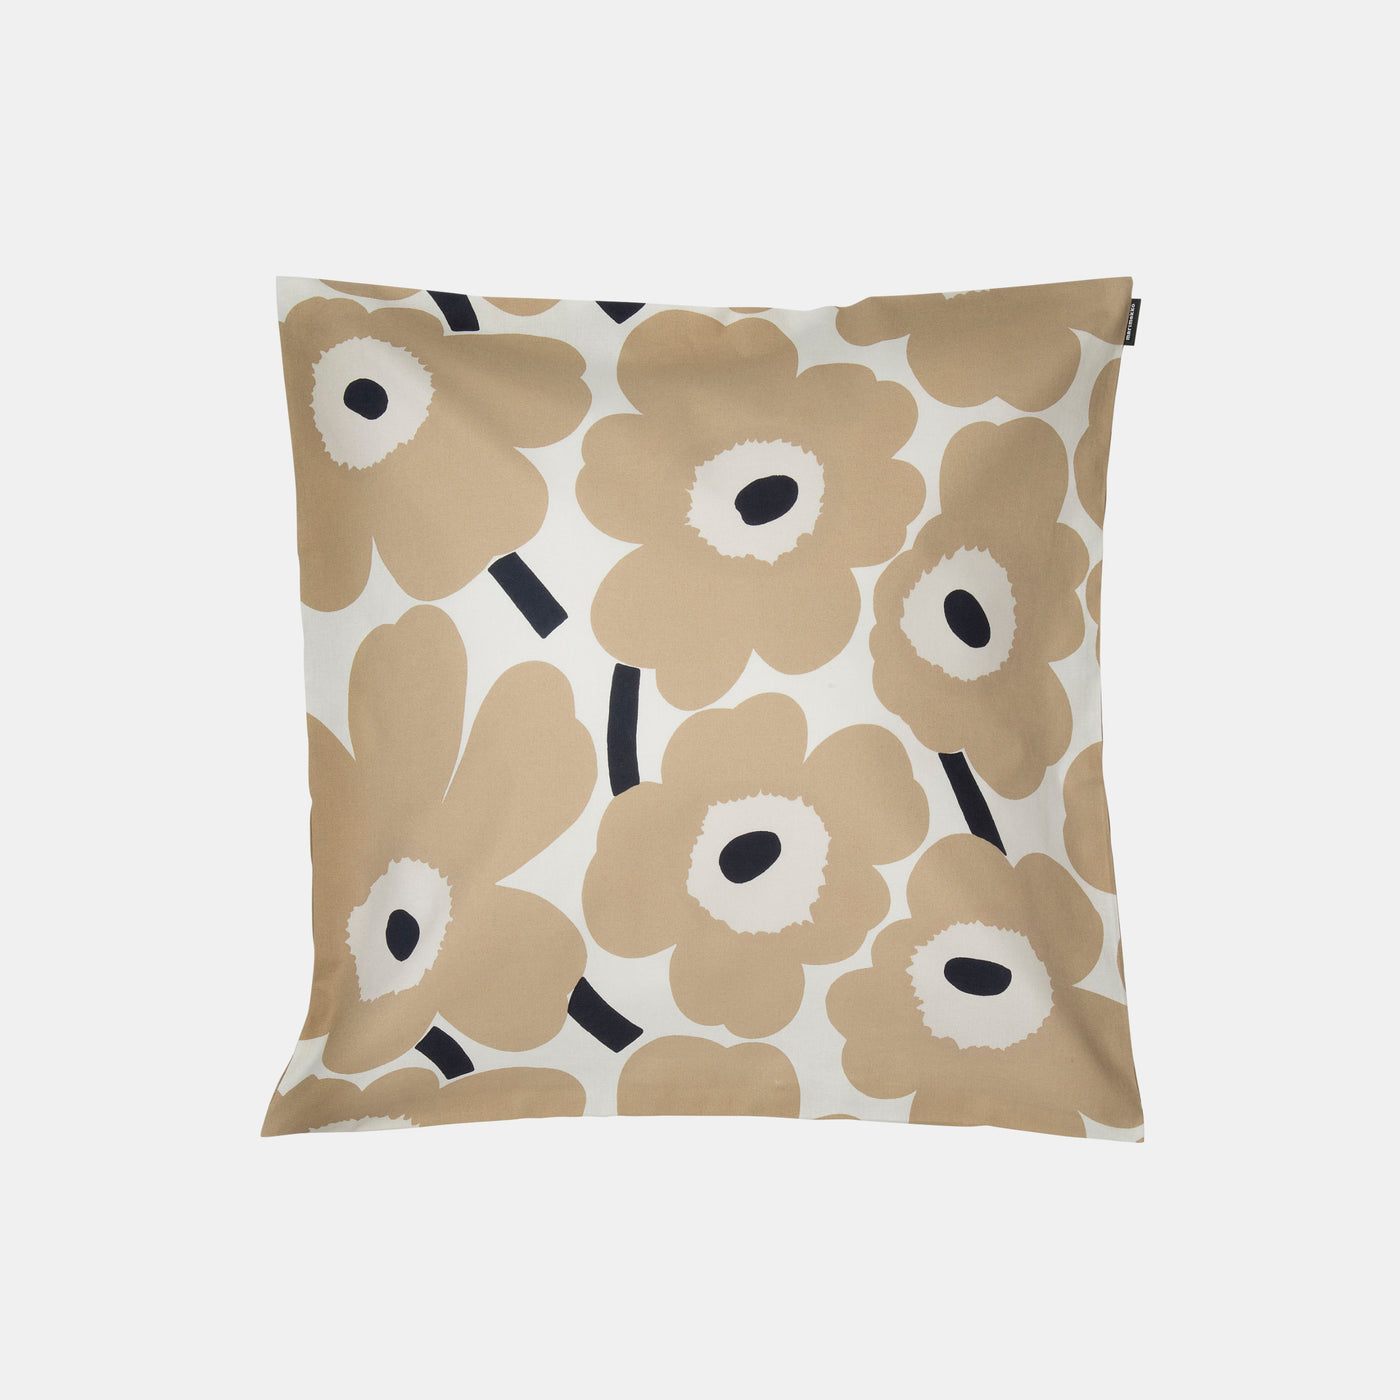 Pieni Unikko cushion cover 50x50cm - Beige